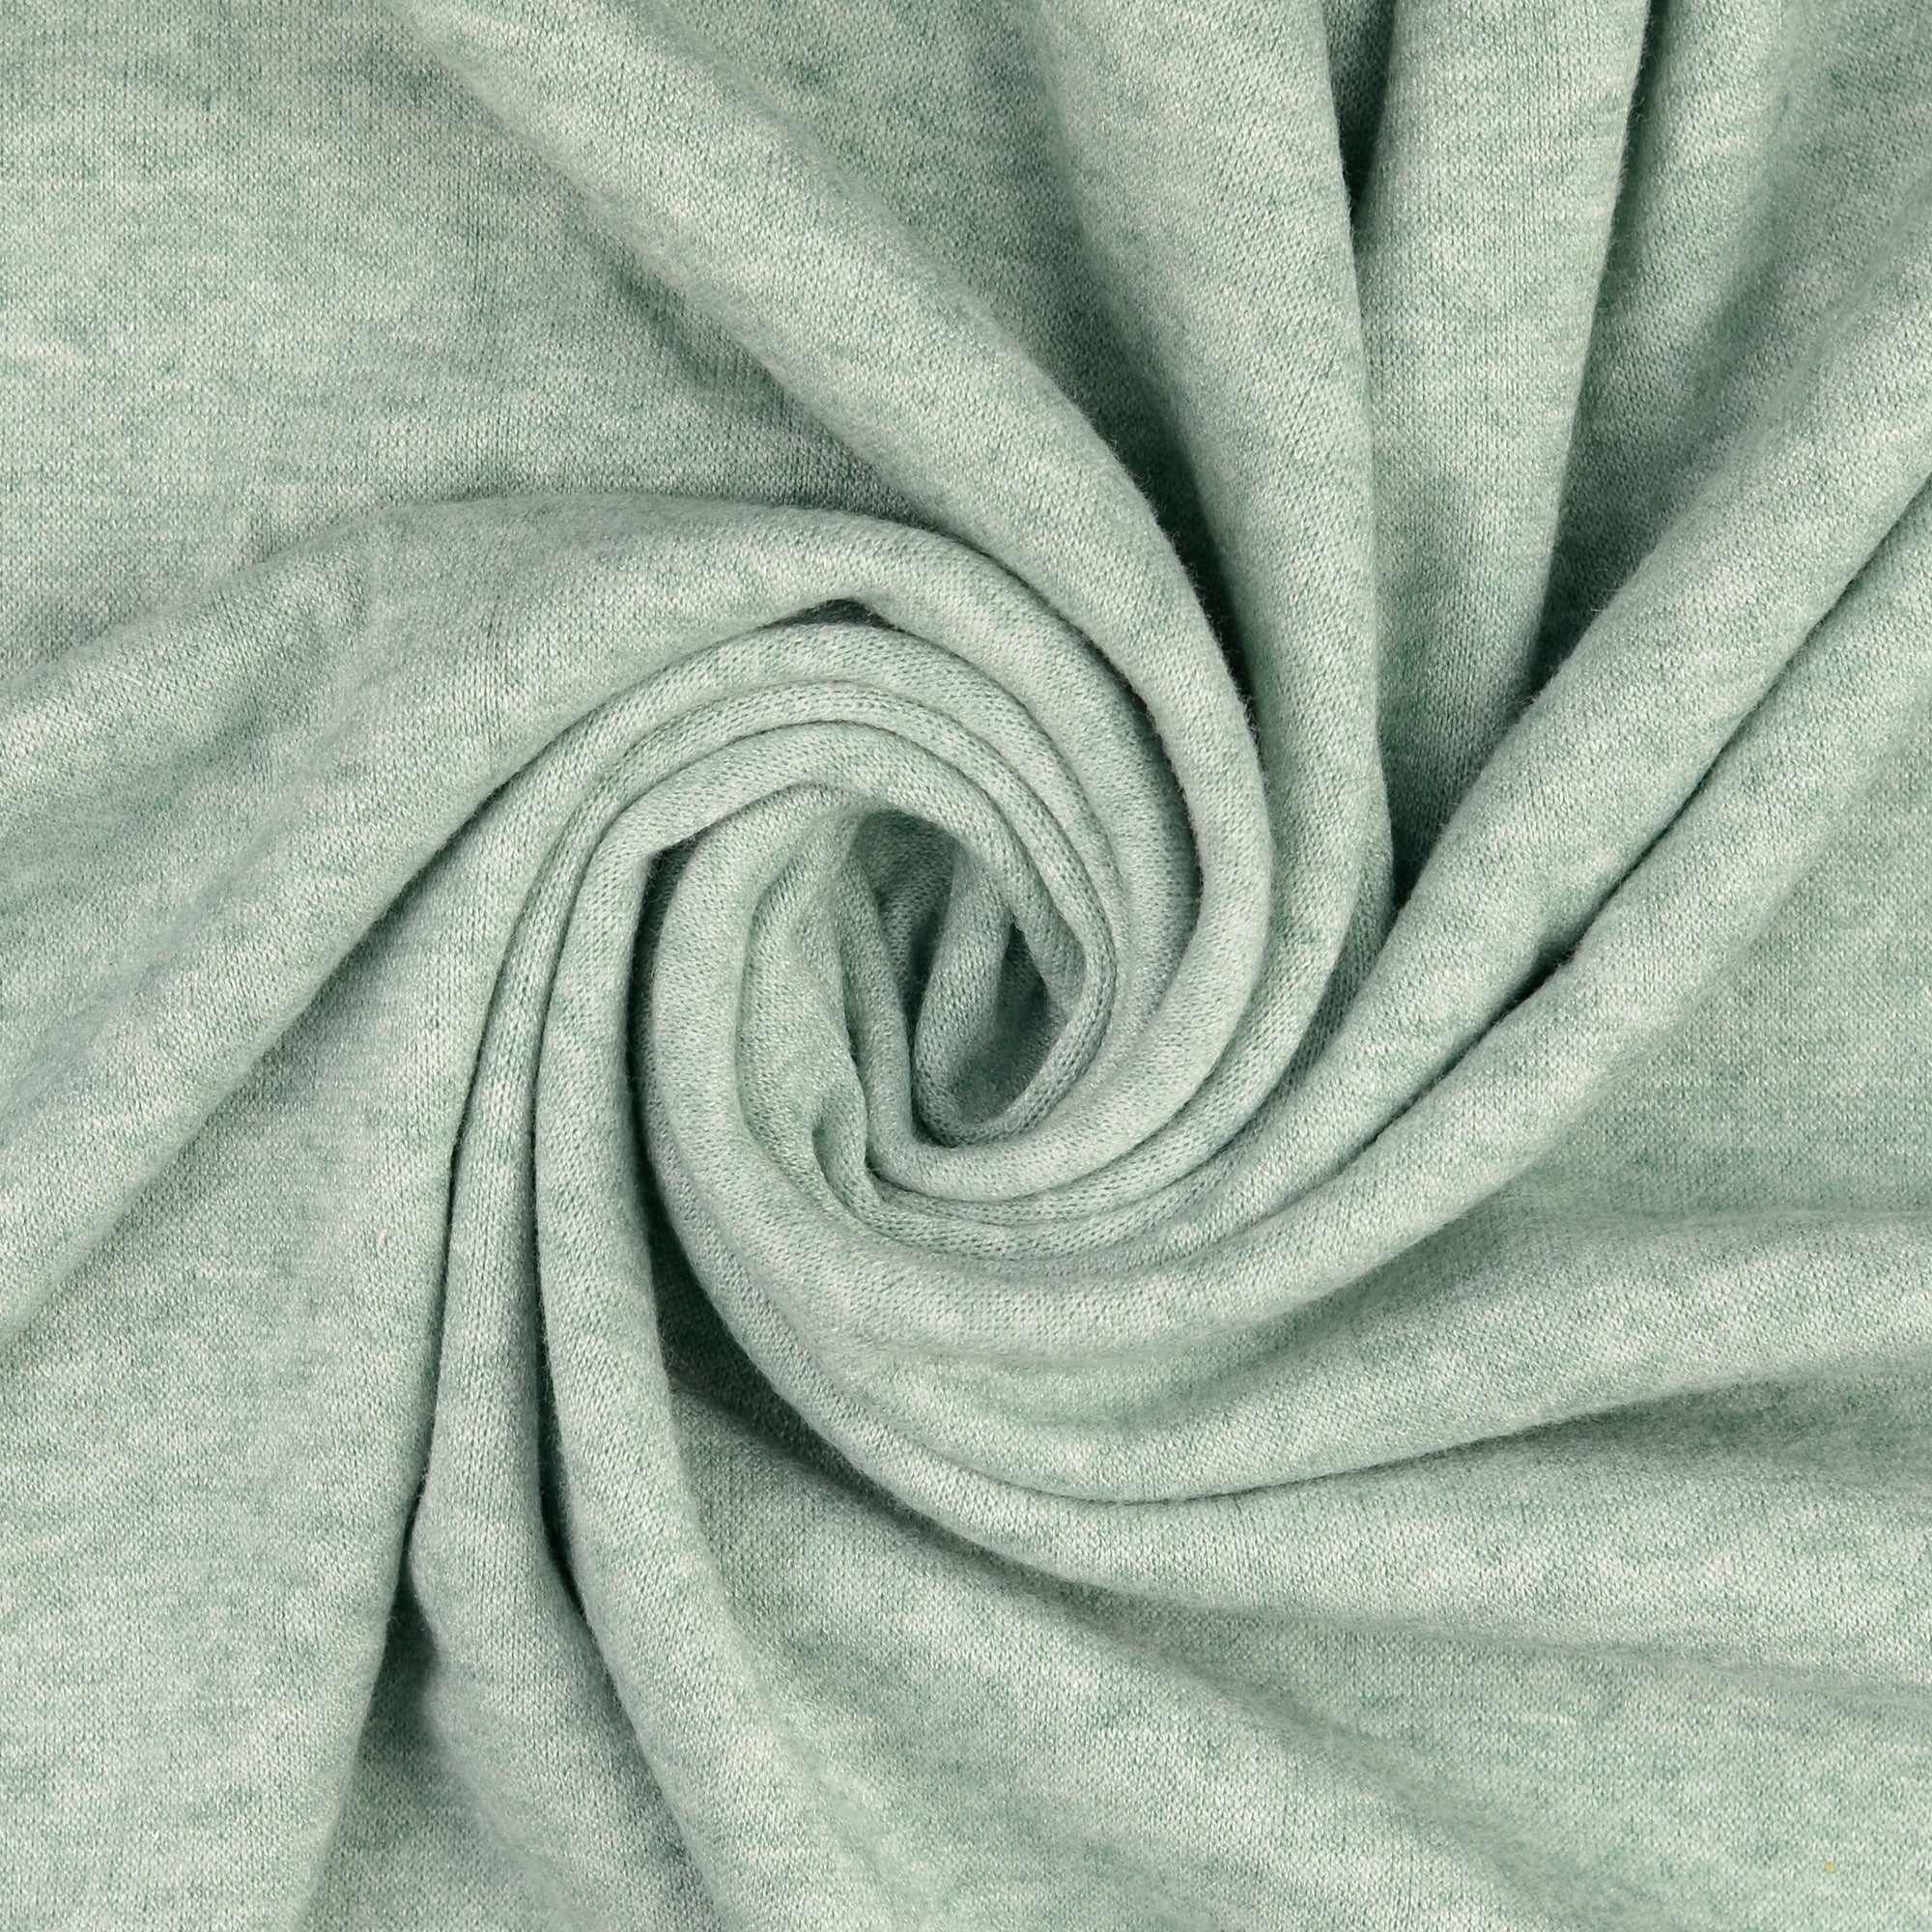 REMNANT 0.3 Metre - Snug Viscose Blend Sweater Knit in Mint Melange